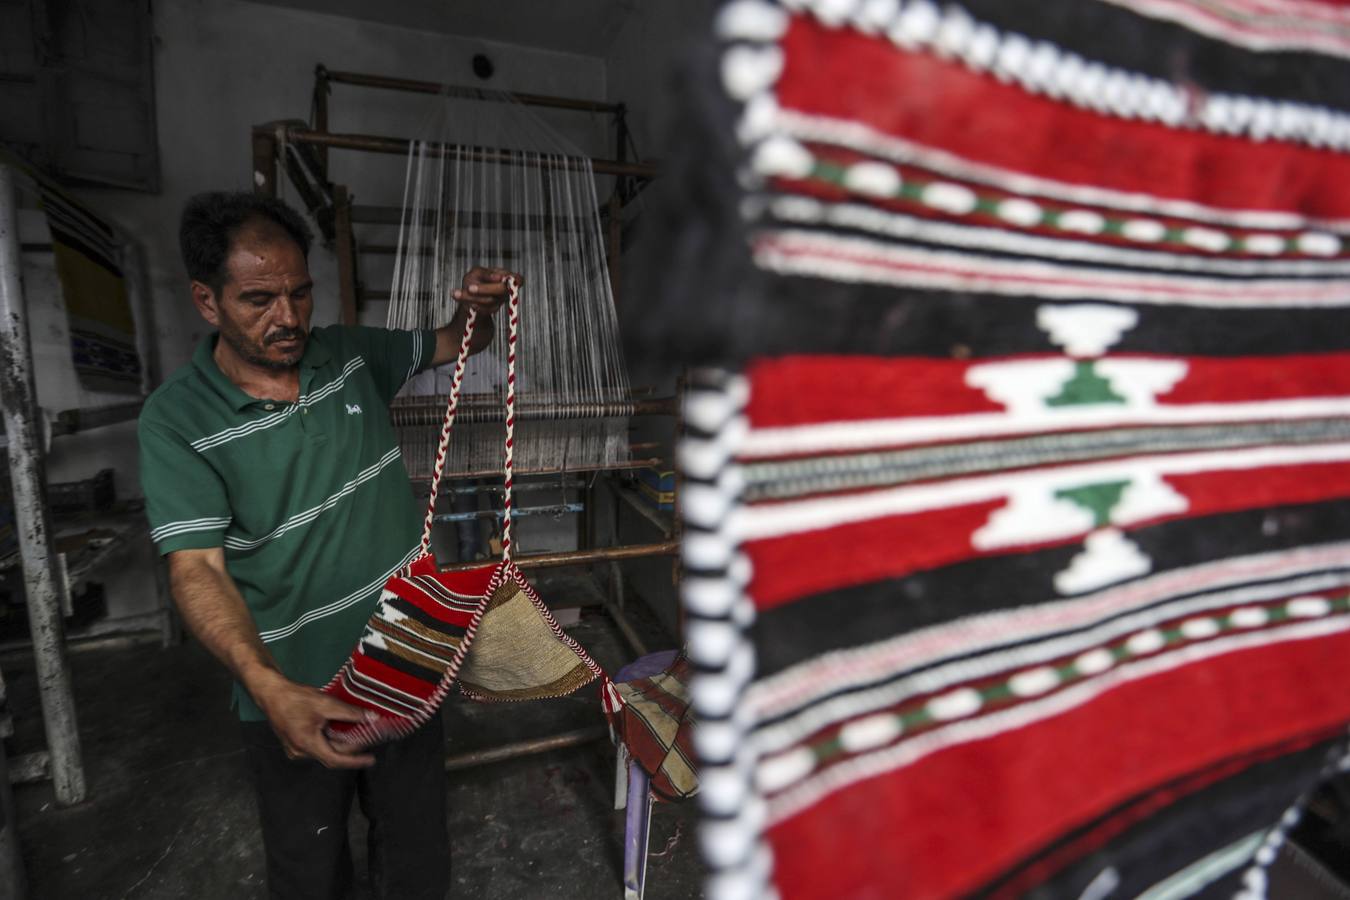 Ariha es una ciudad al norte de Siria, administrativamente parte de la Gobernación de Idlib, ubicada al sur de Idlib, famosa por sus alfombras árabes tradicionales tejidas con ayuda de un telar. El arte de tejer alfombras se transmite de generación en generación.